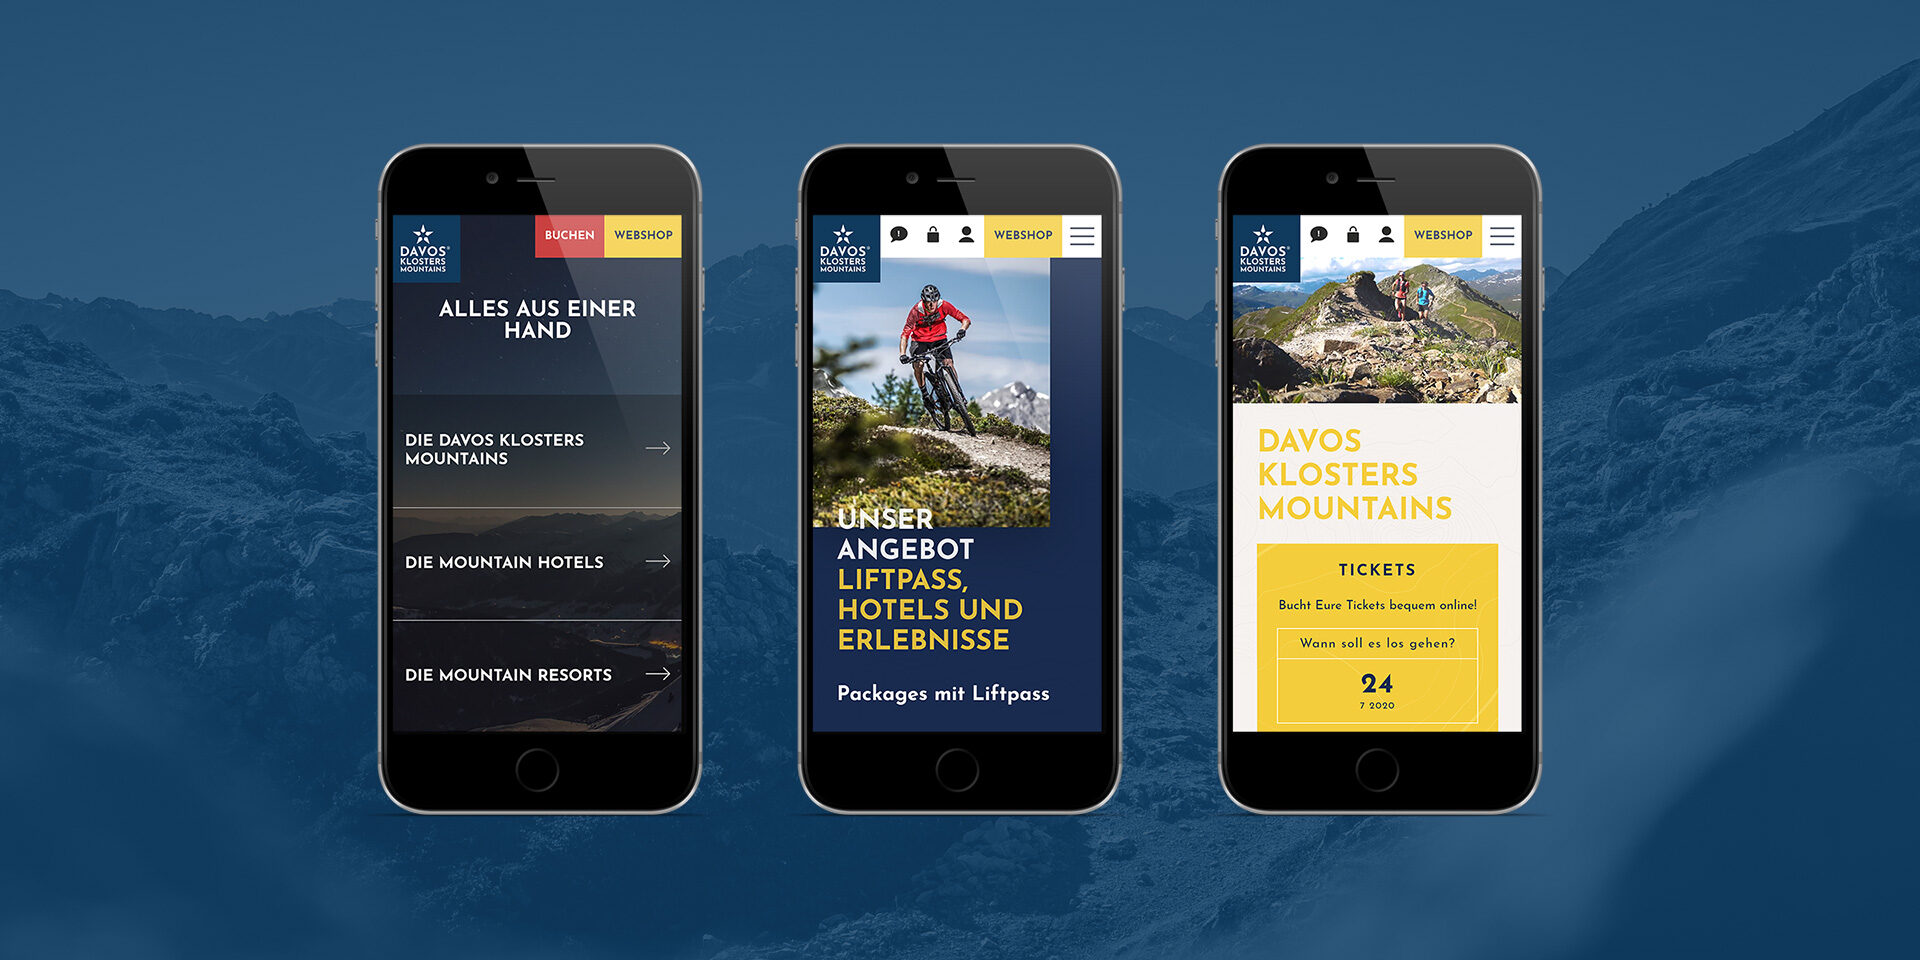 Mockup der neuen Website von Davos Klosters Mountains, dargestellt auf 3 Smartphones.